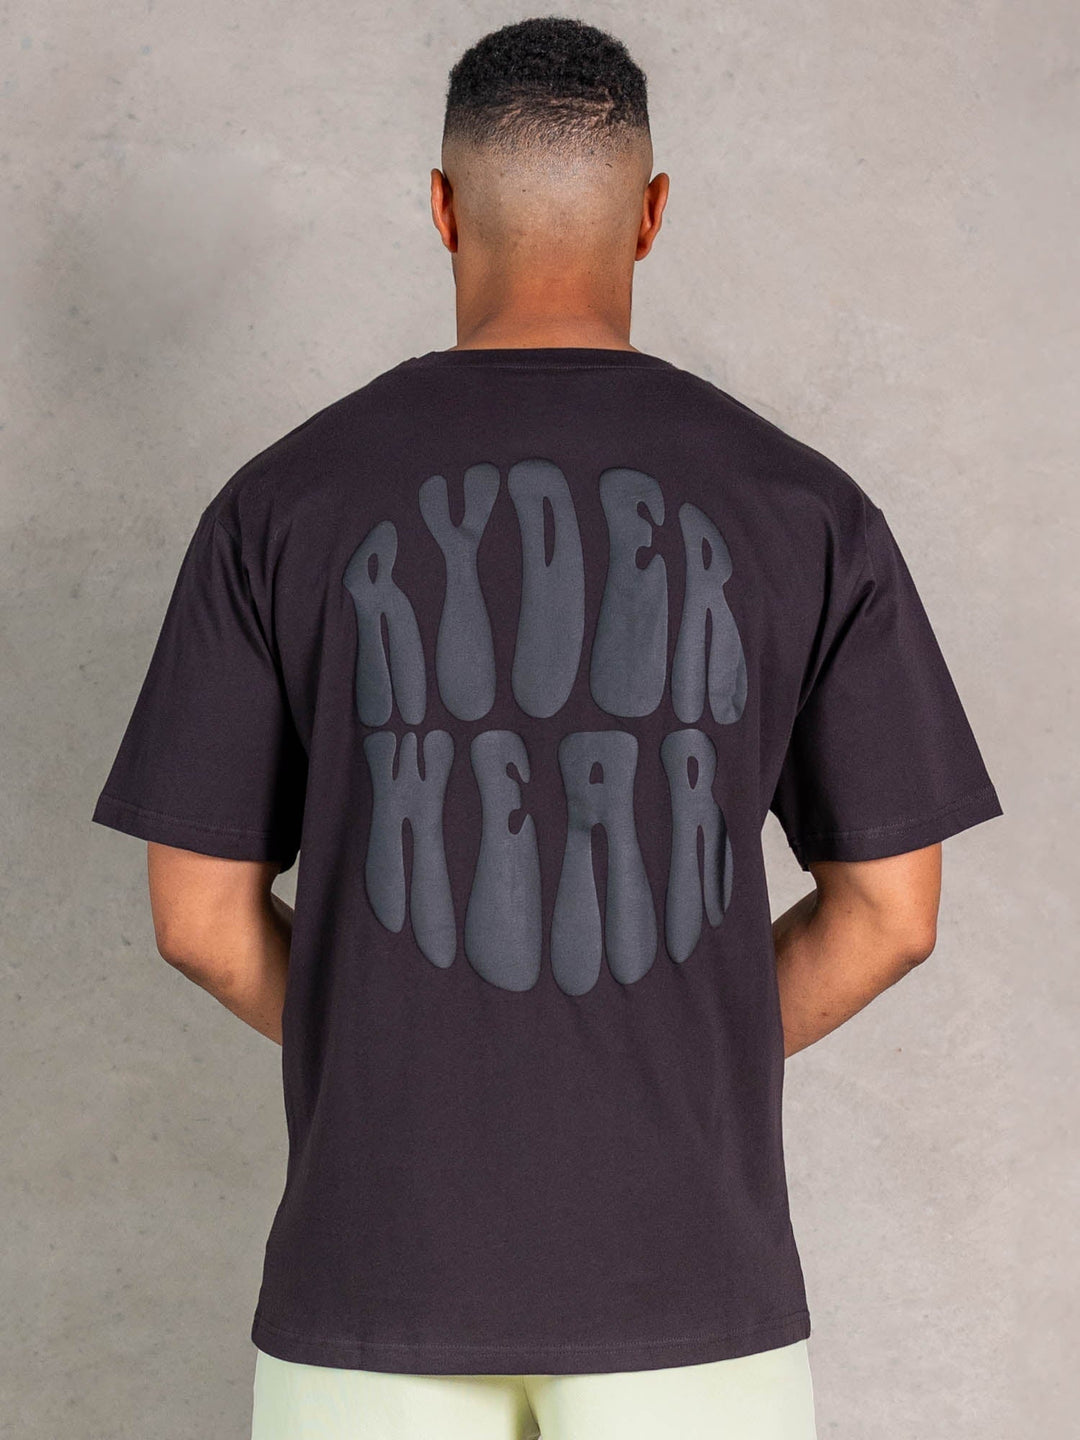 NRG Oversized T-Shirt - Faded Black Clothing Ryderwear 